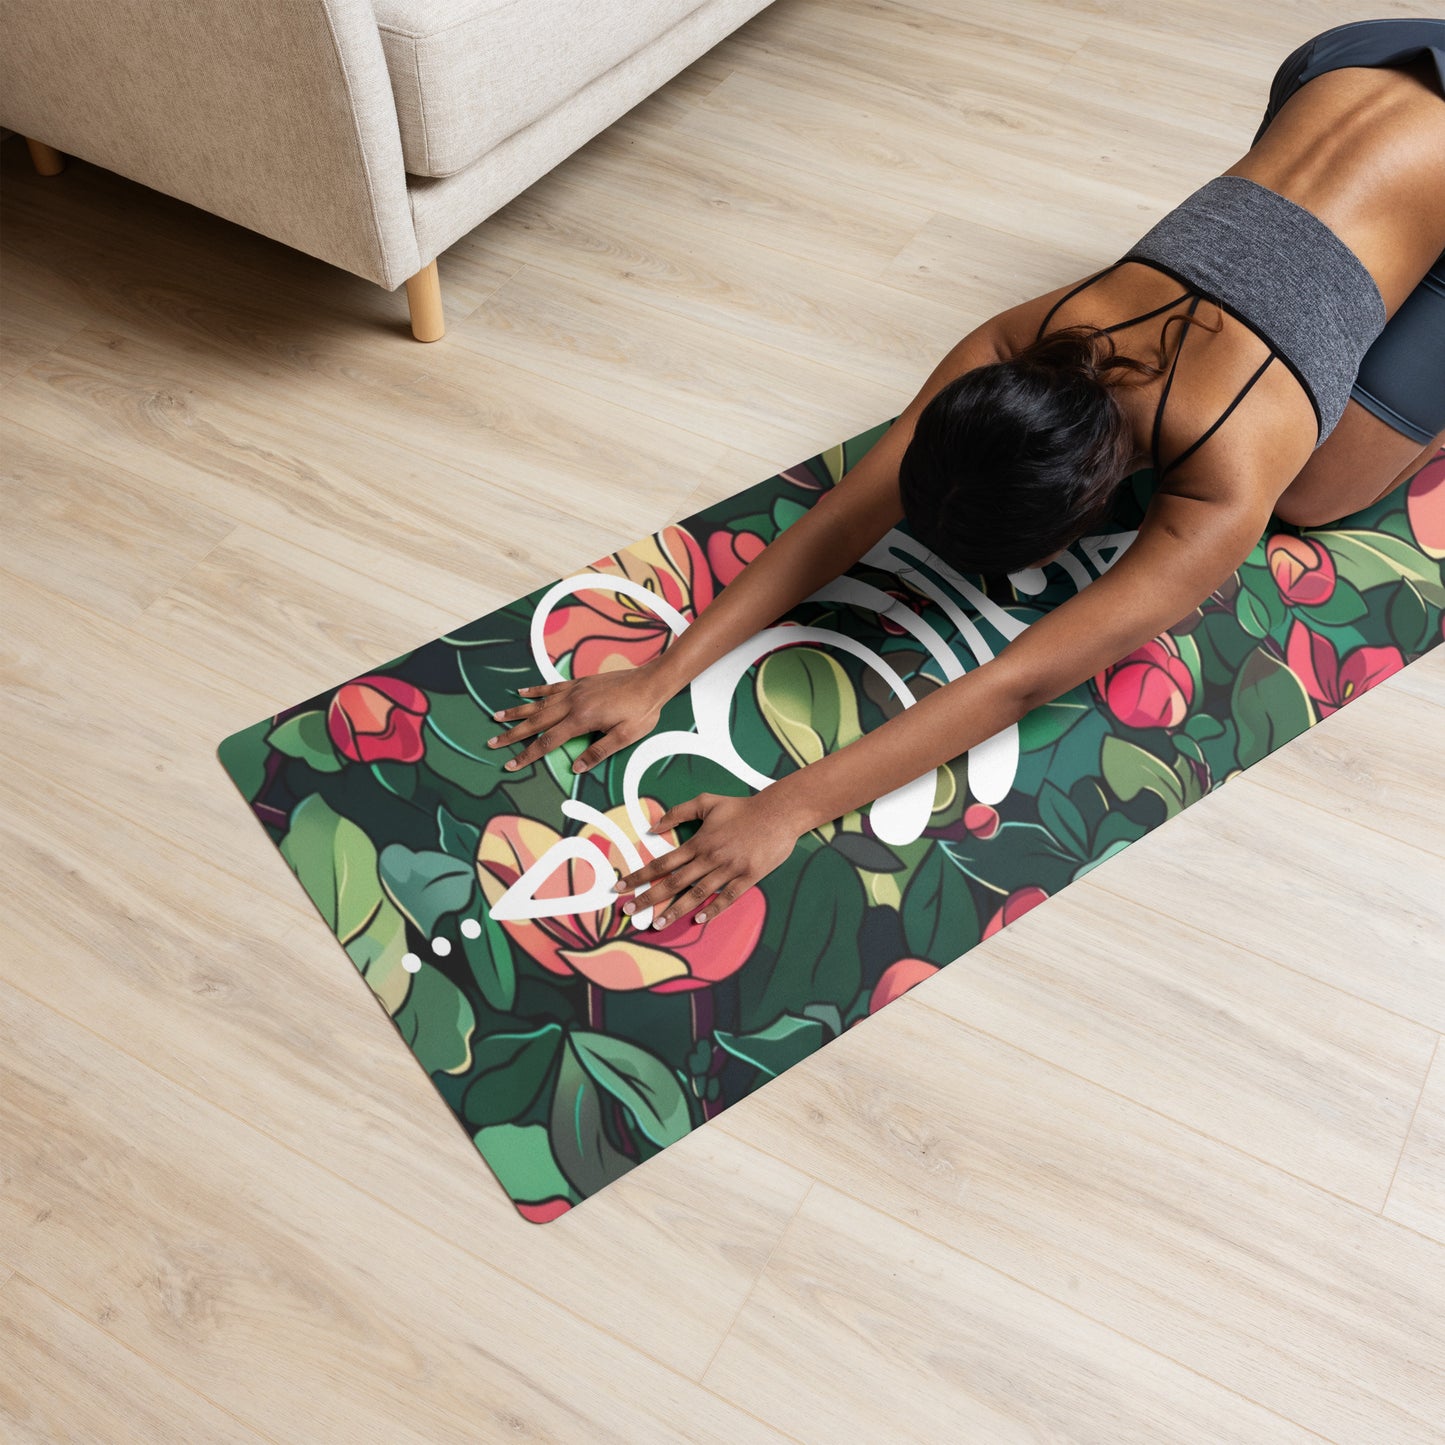 Breathe in Garden Yoga mat